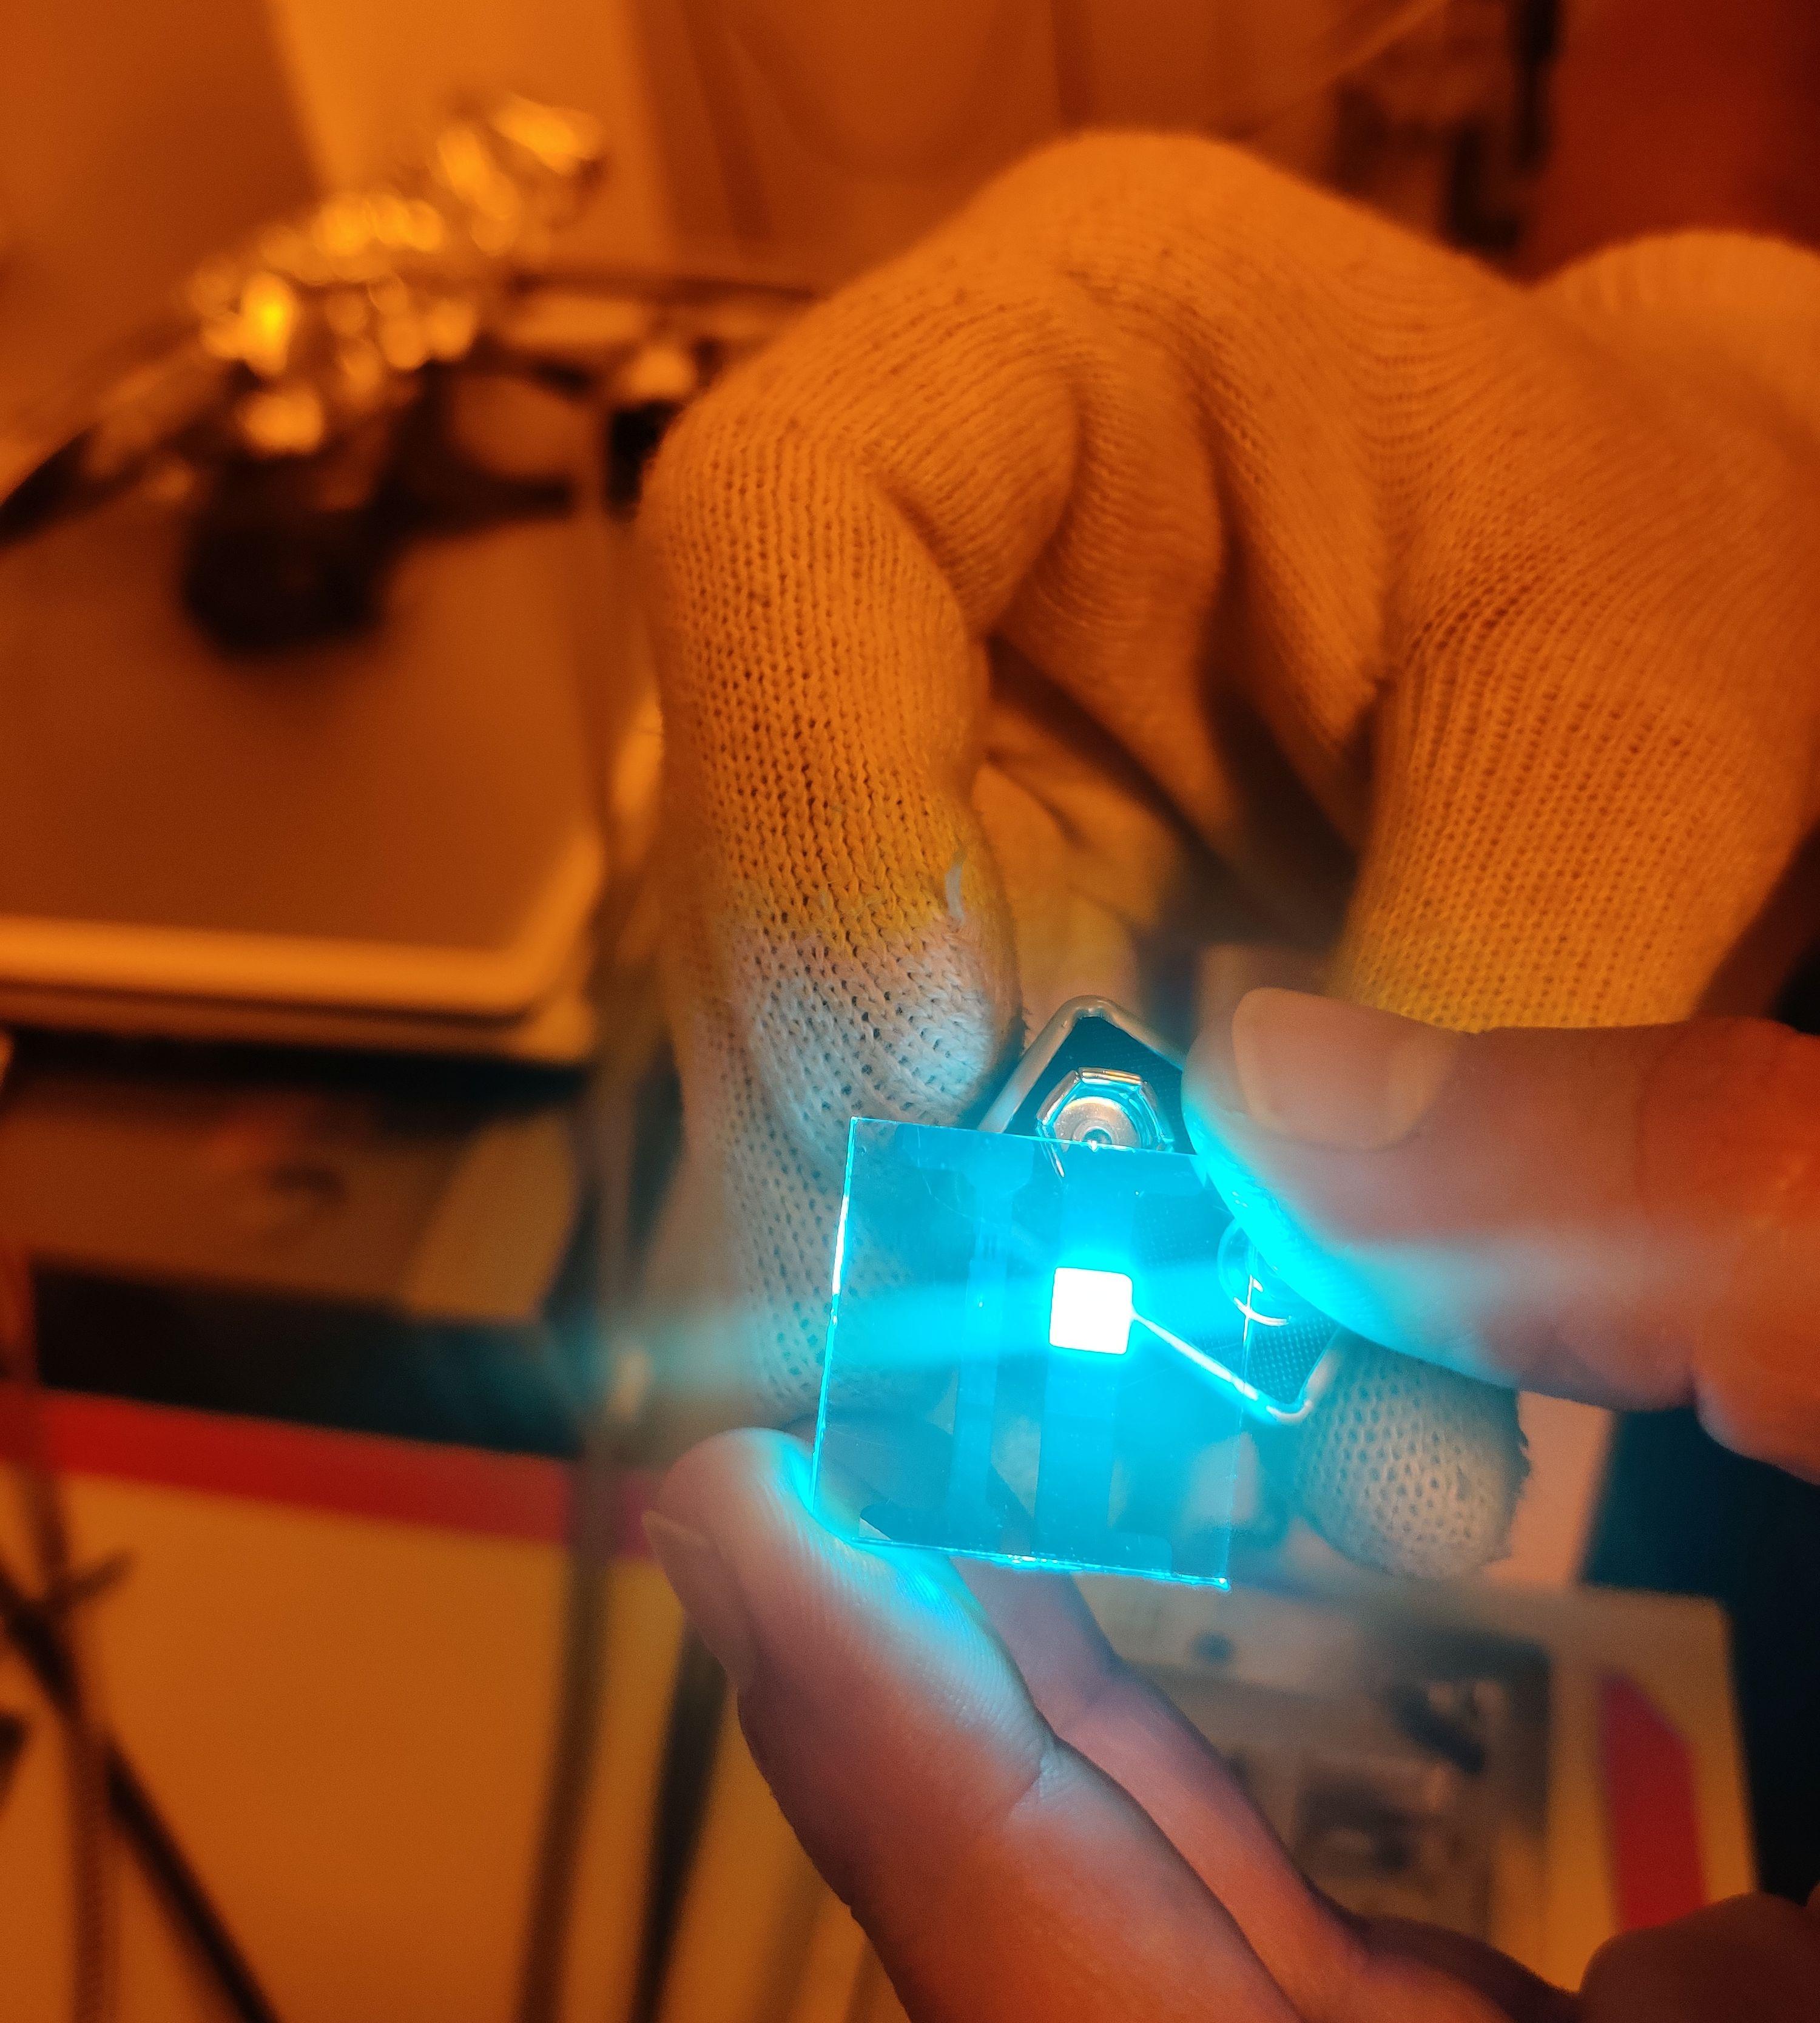 Untersuchung einer organischen Leuchtdiode (OLED)